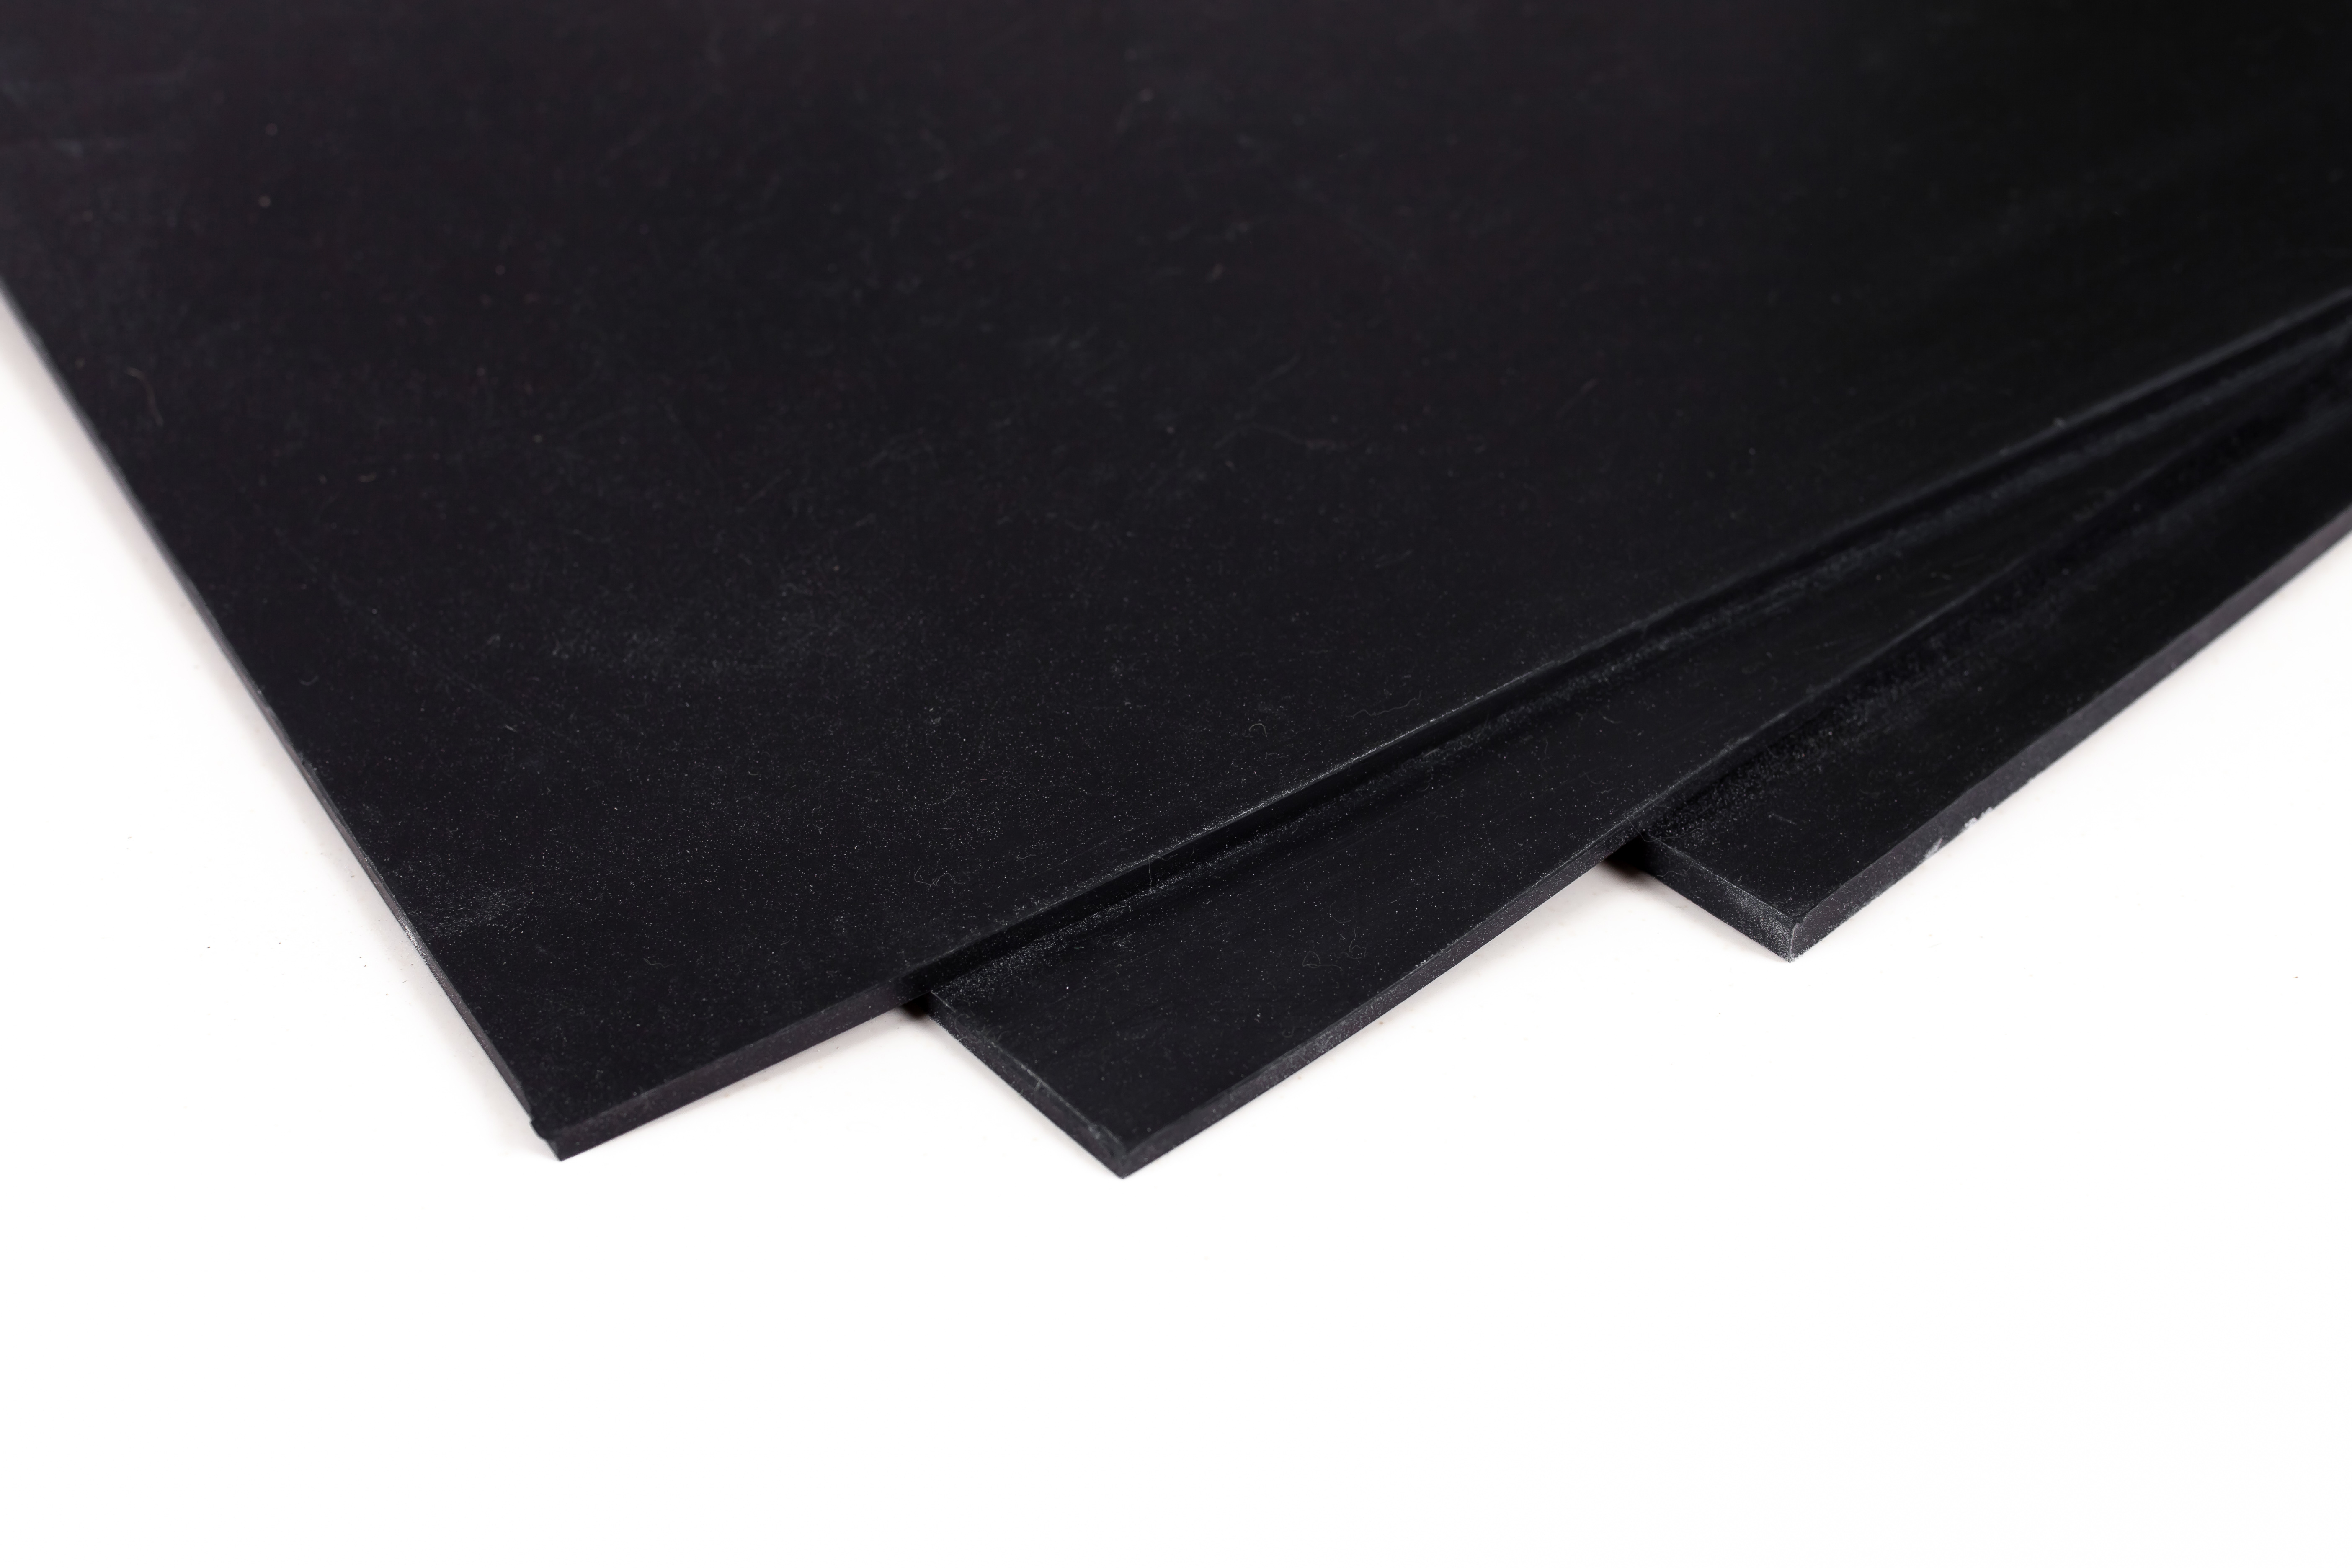 Пластина резиновая черная монолитная 4 мм размер 720х720 мм.